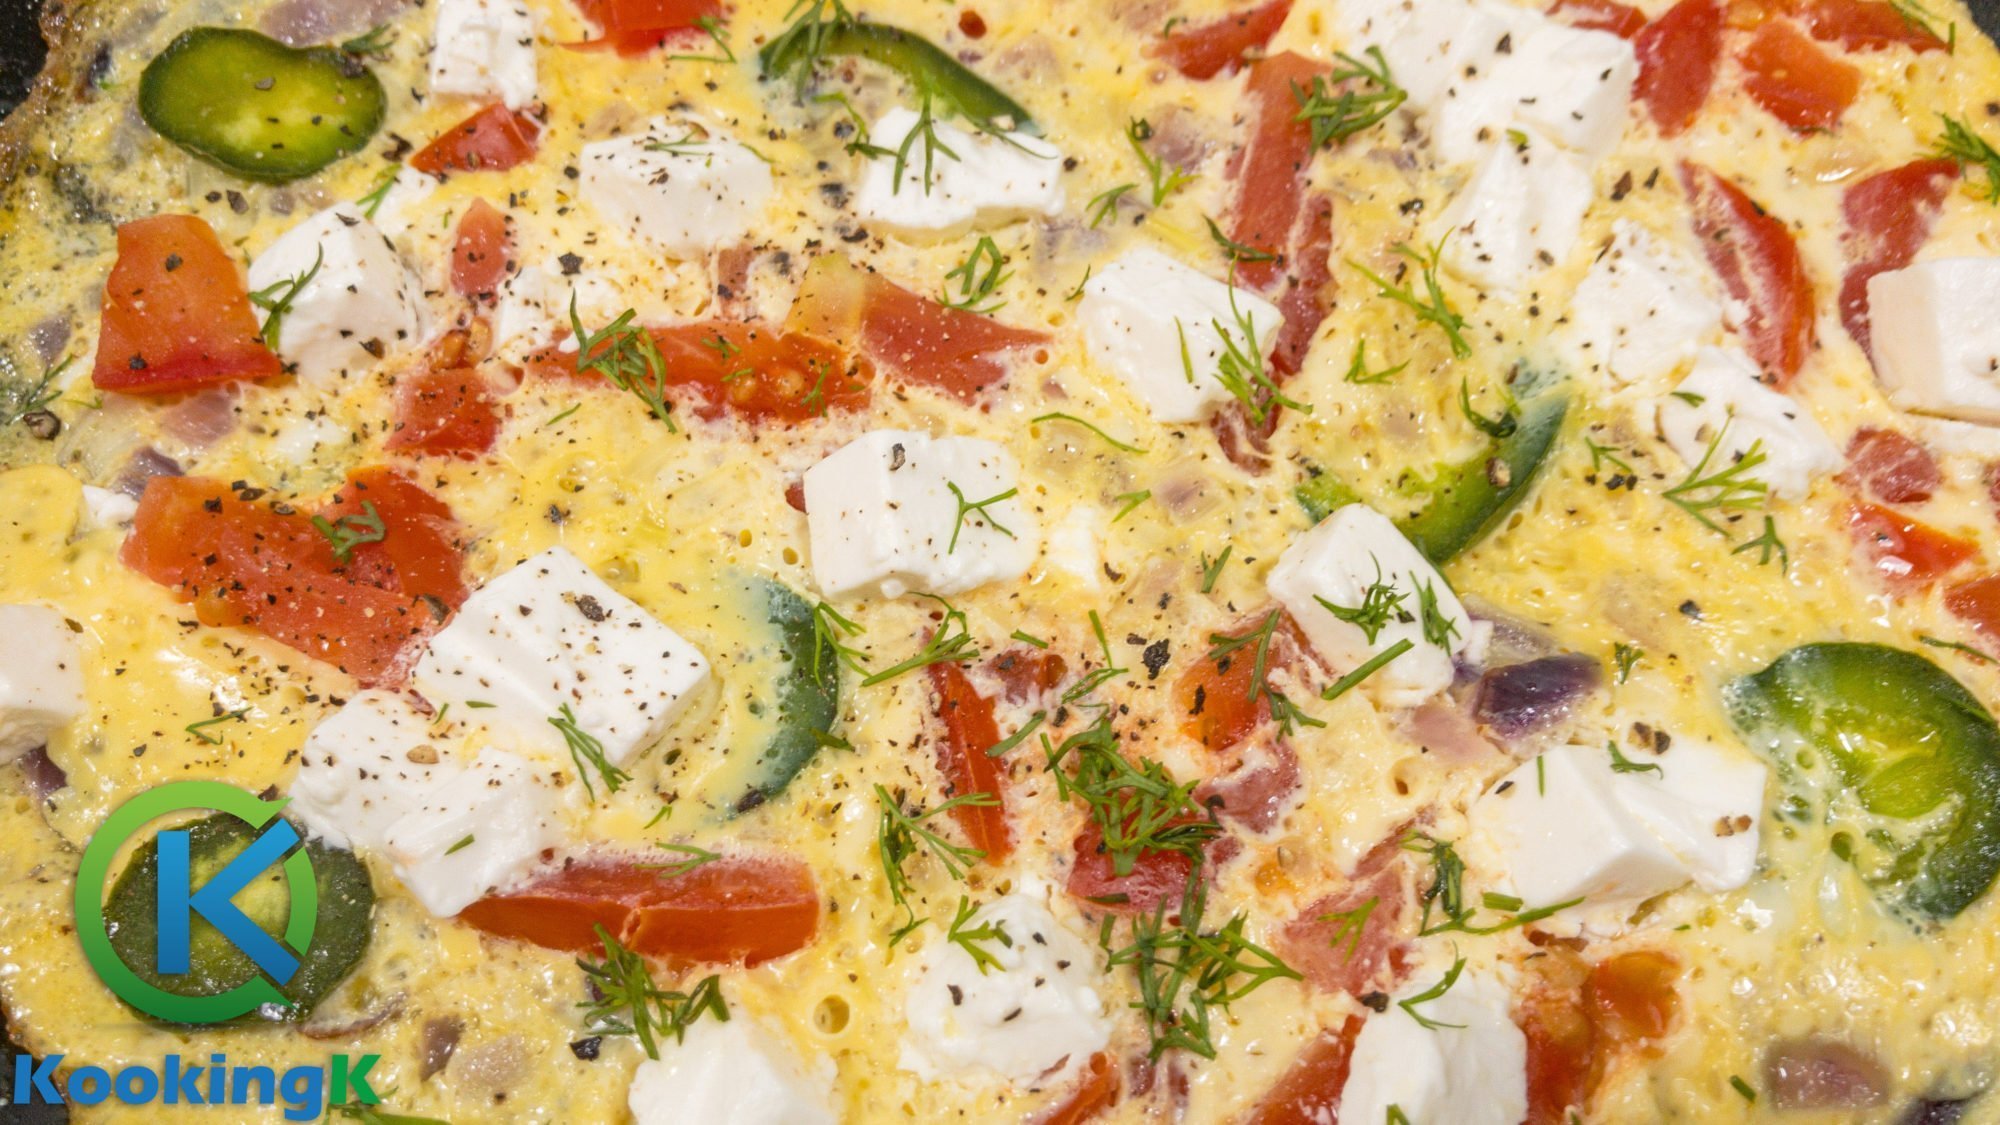 Feta and Tomato Omelette Recipe - Breakfast idea by KooKingK